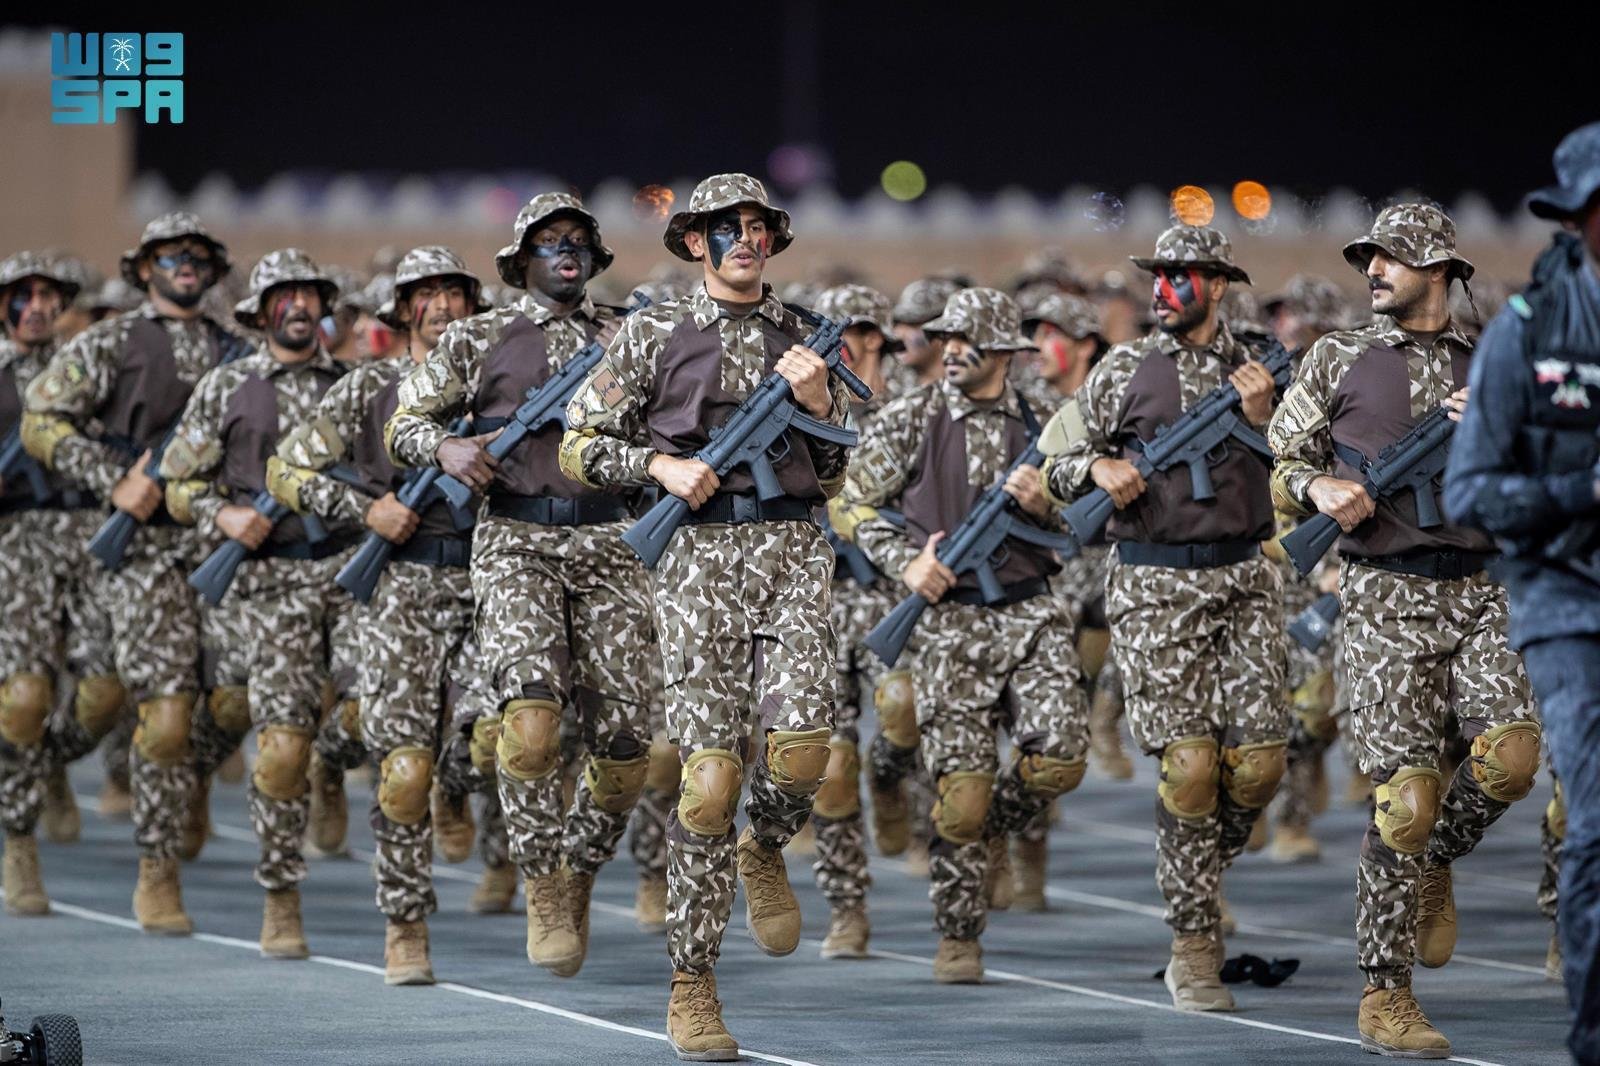 ظهور لافت للمجندات السعوديات خلال استعراض قوات أمن الحج لهذا العام 